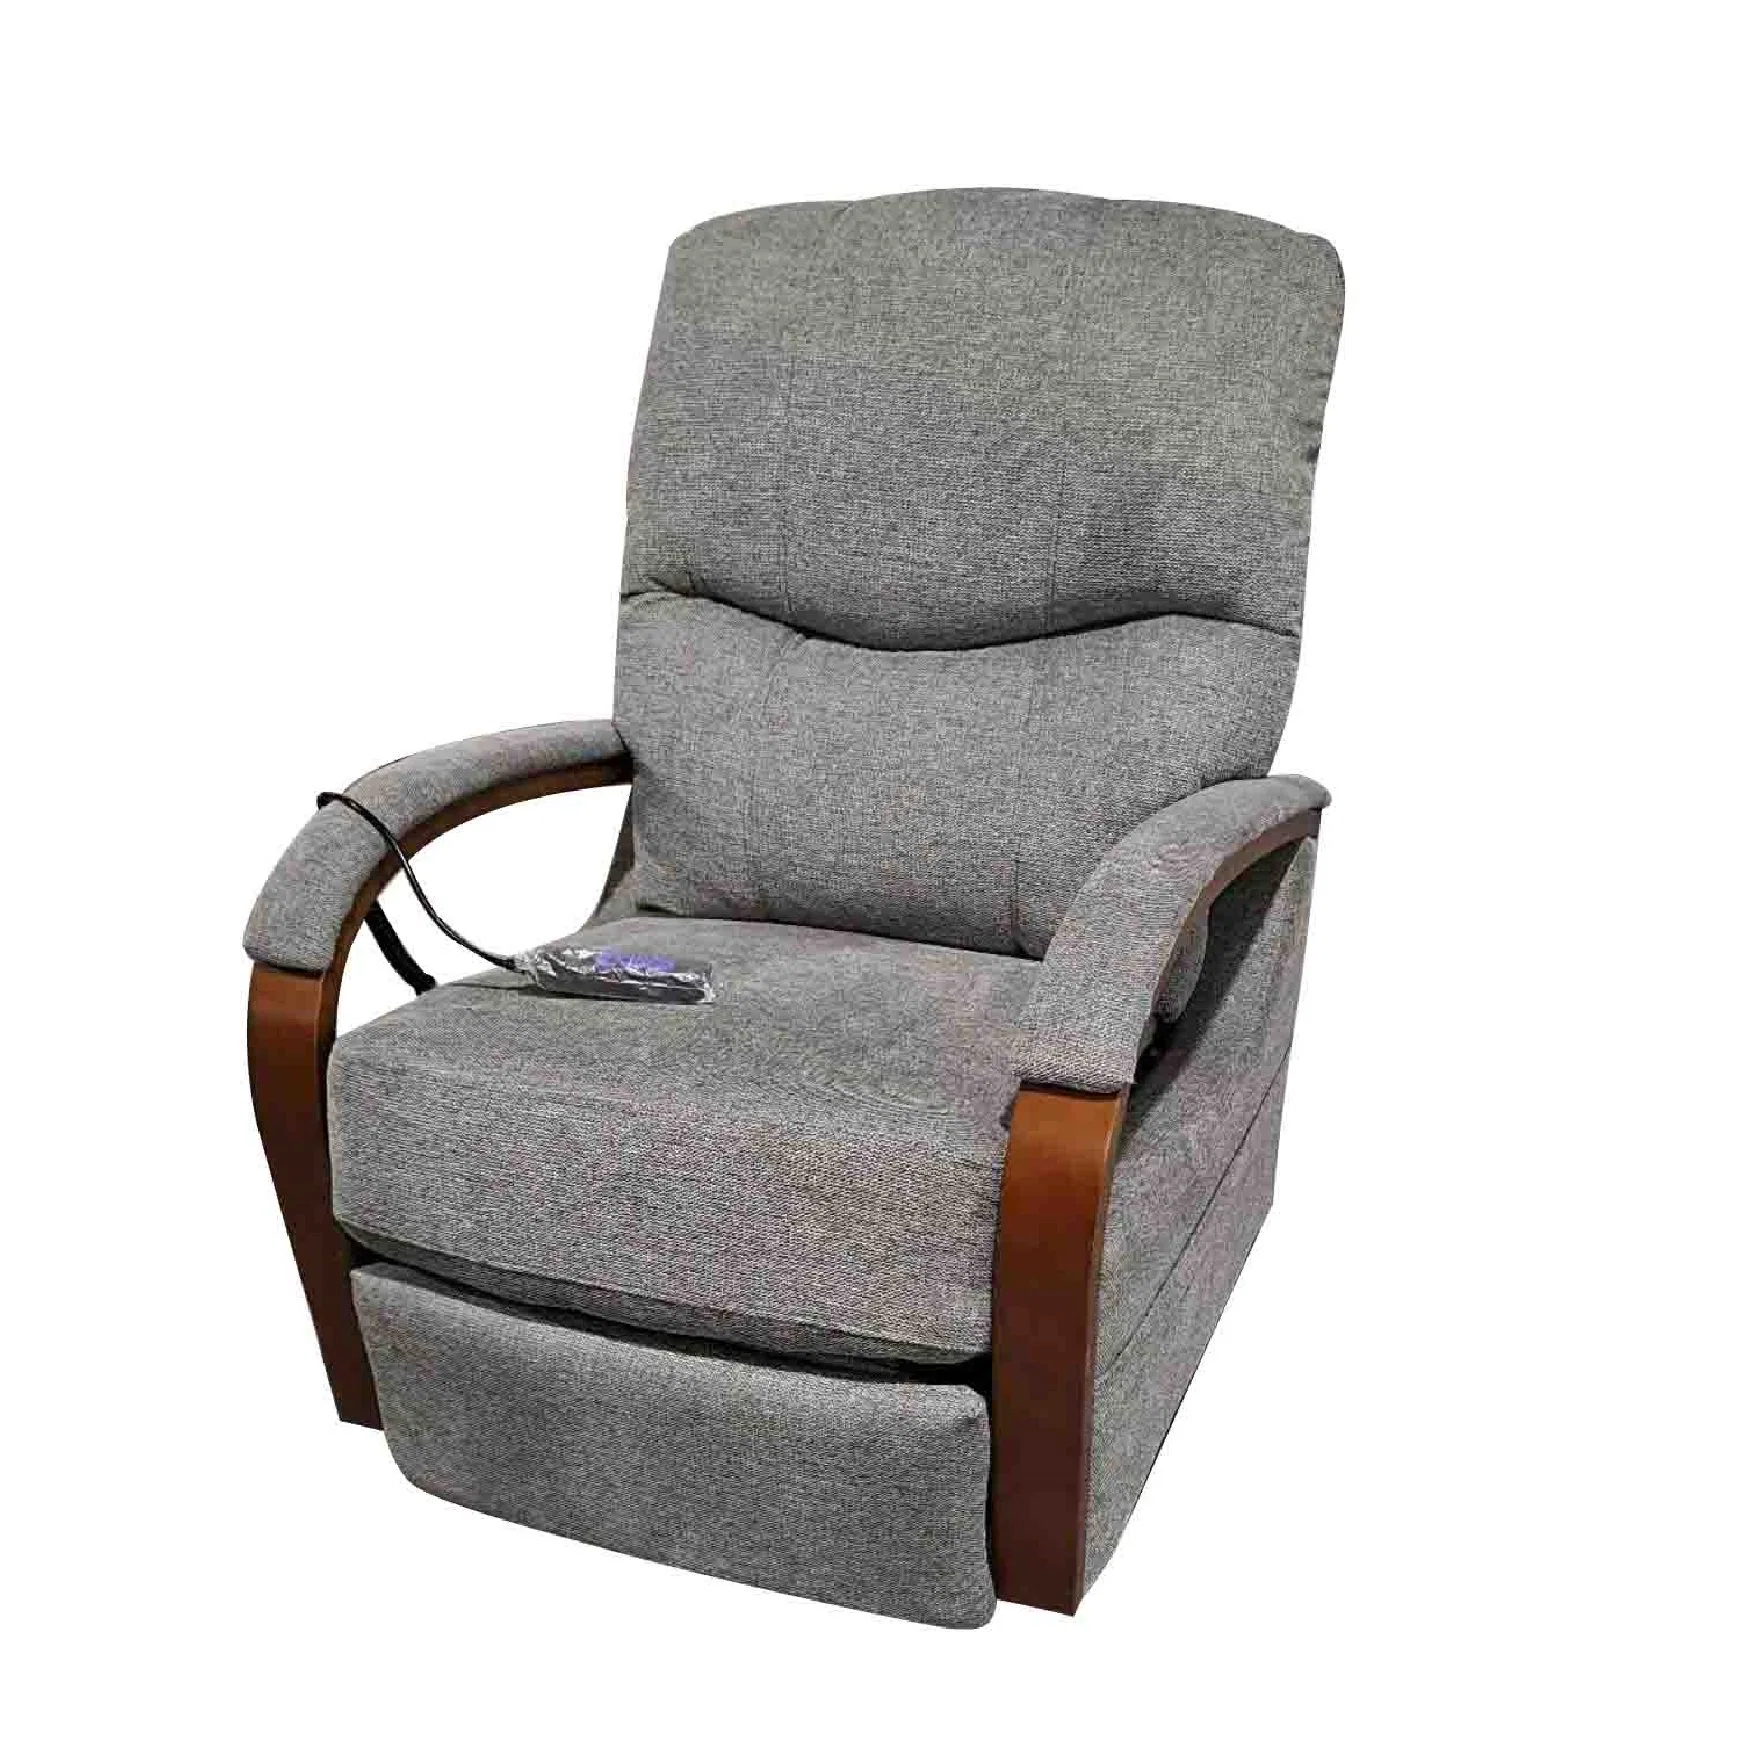 Jky Furniture Air Leather Power Riser Lift Recliner Chair with Massage Function for The Elderly and Disabled

Jky Meubles Fauteuil releveur électrique en cuir Air avec fonction de massage pour les personnes âgées et handicapées